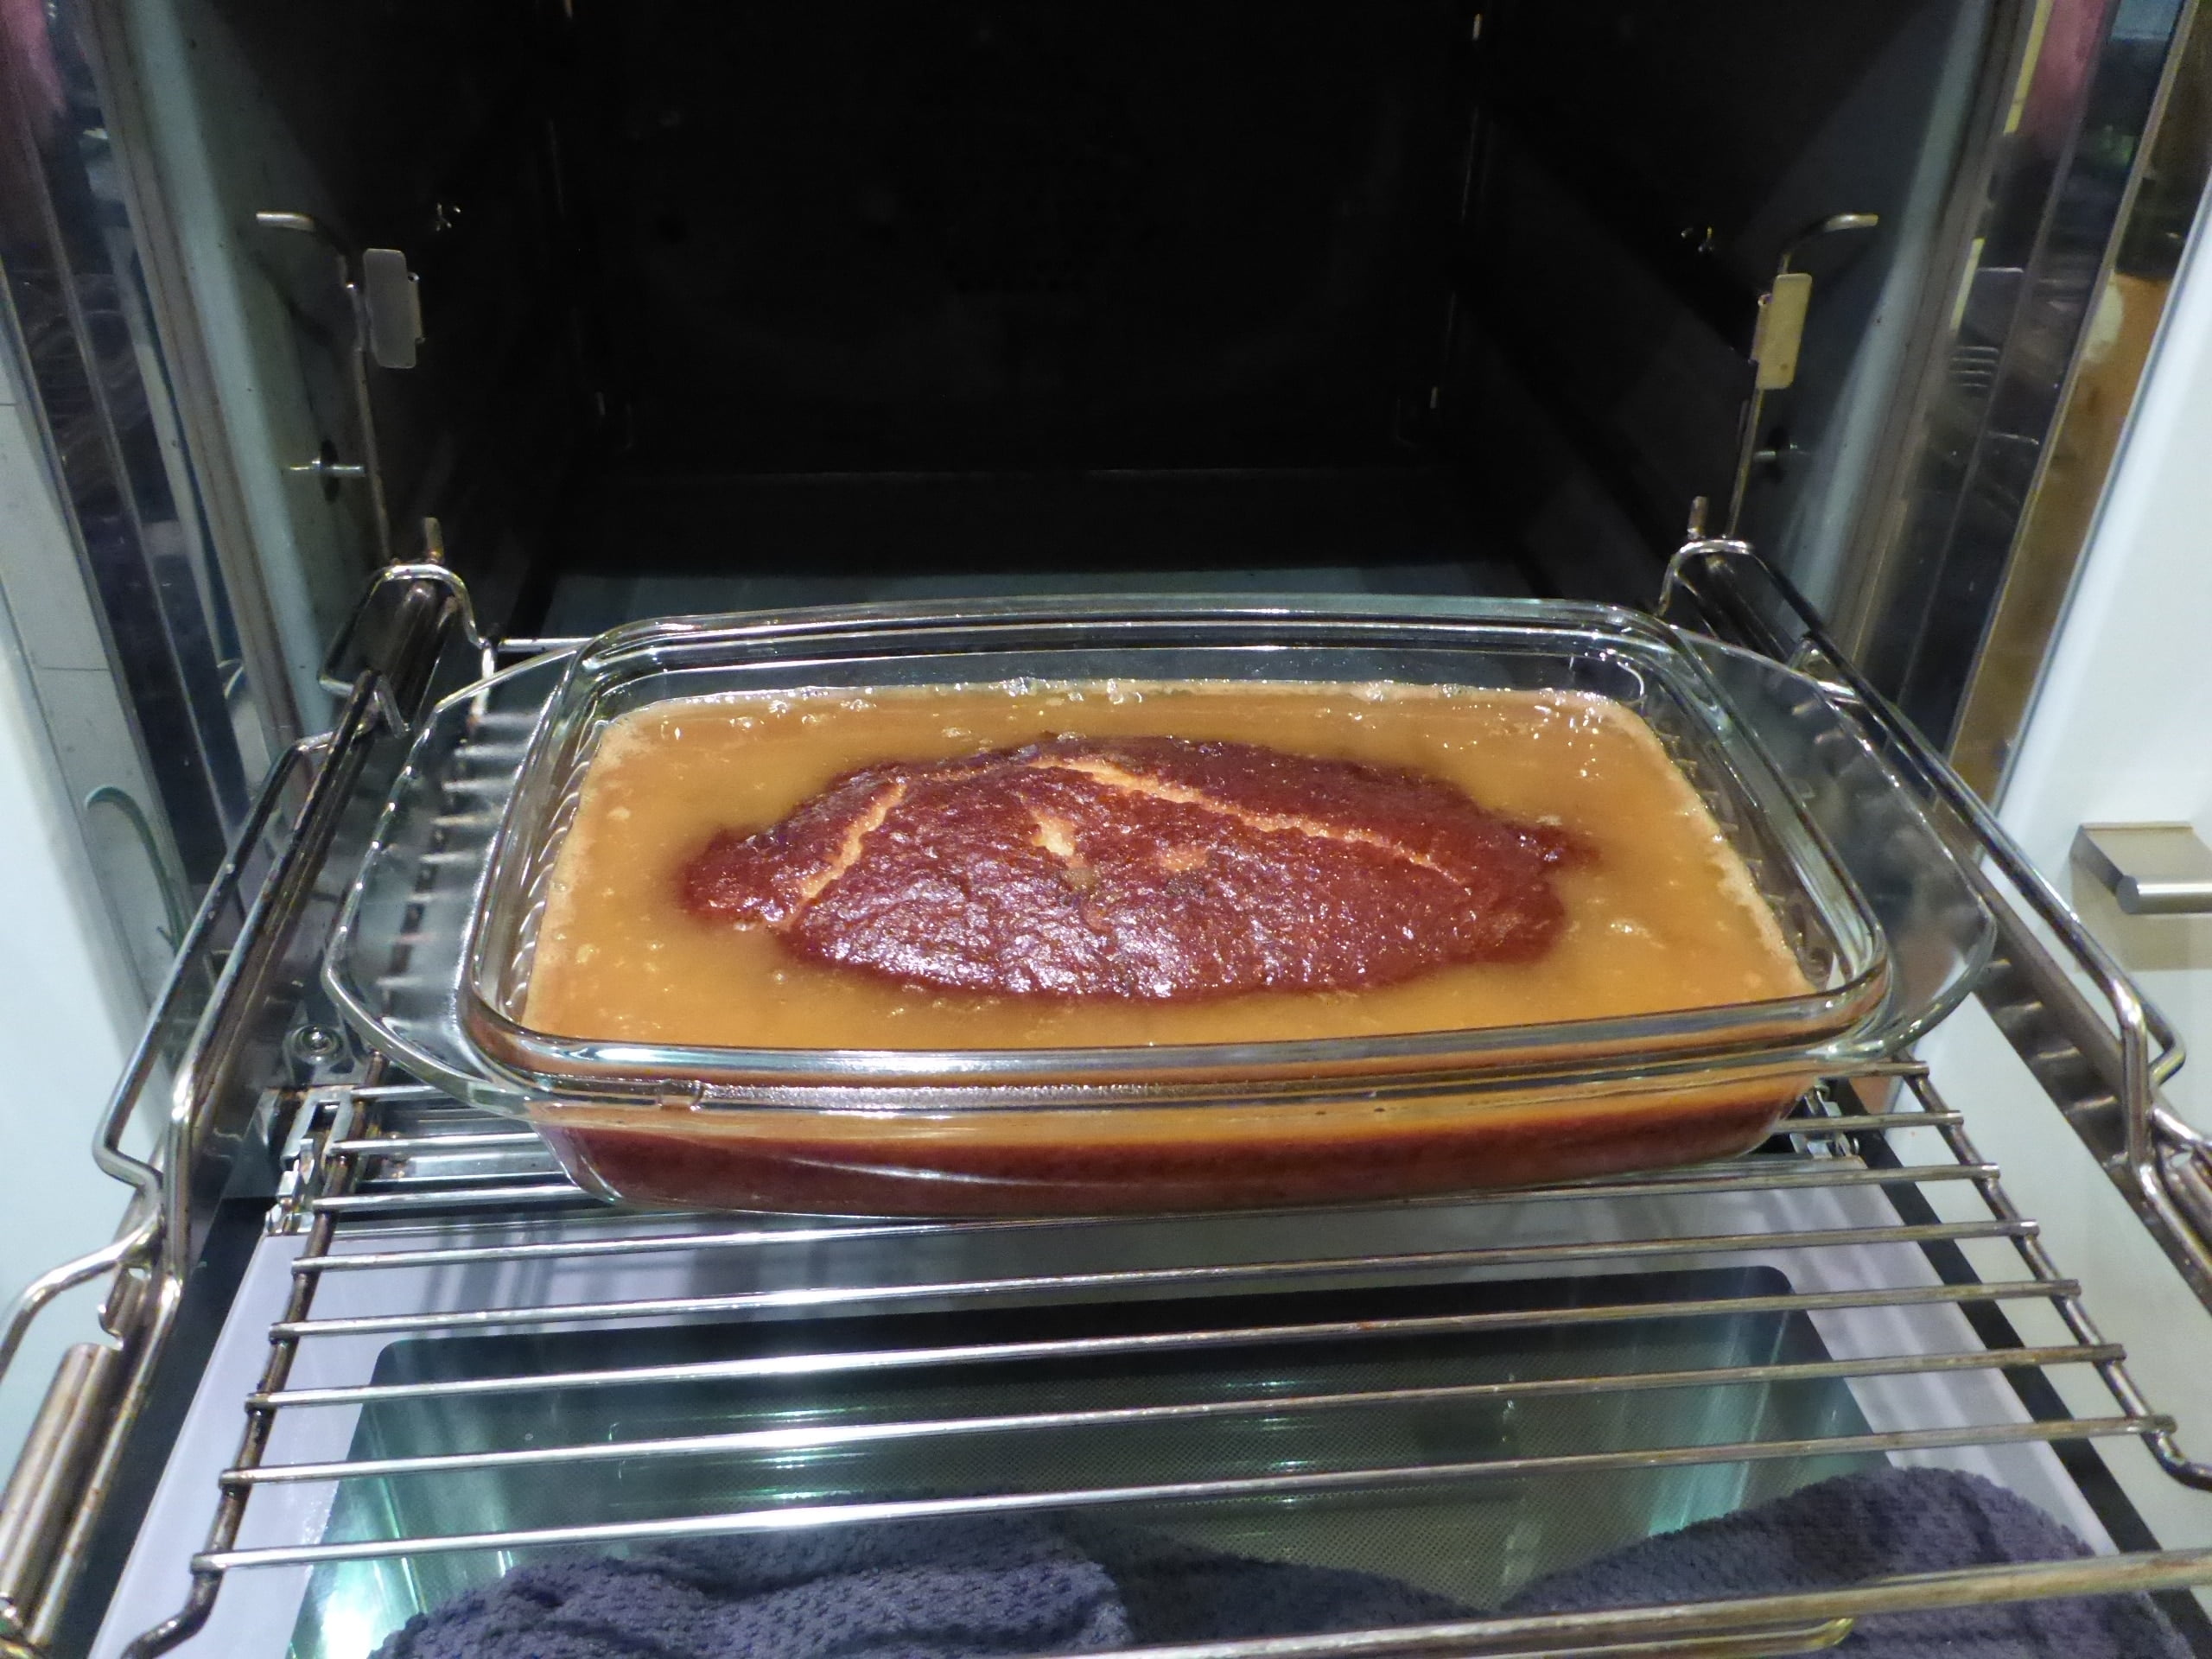 Ein Bild von einem frisch gebackenen Malva Pudding, der gerade aus dem Ofen genommen wurde. Eine Gabel hat gerade Löcher in den Pudding gestochen, und jetzt wurde köstlicher Sirup darüber gegossen.